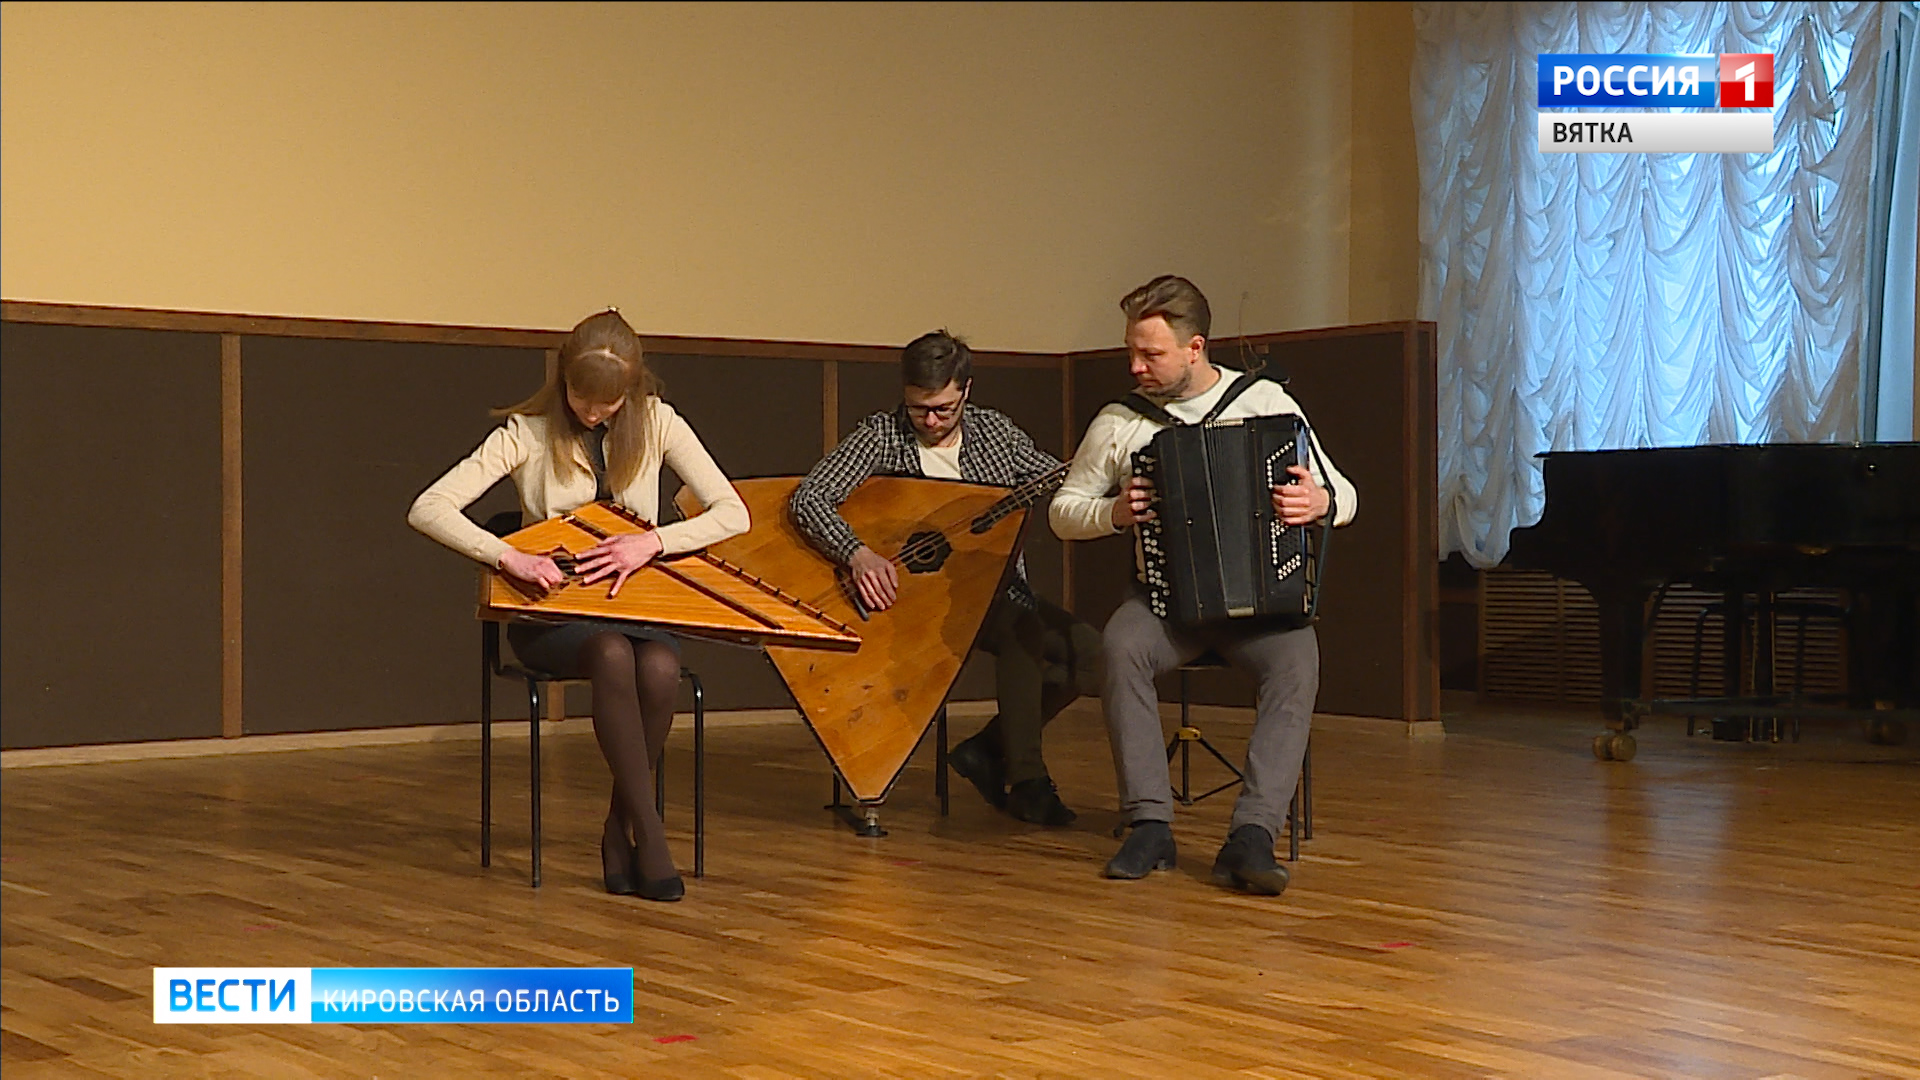 Русский концертный ансамбль Вятской филармонии стал лауреатом престижного конкурса